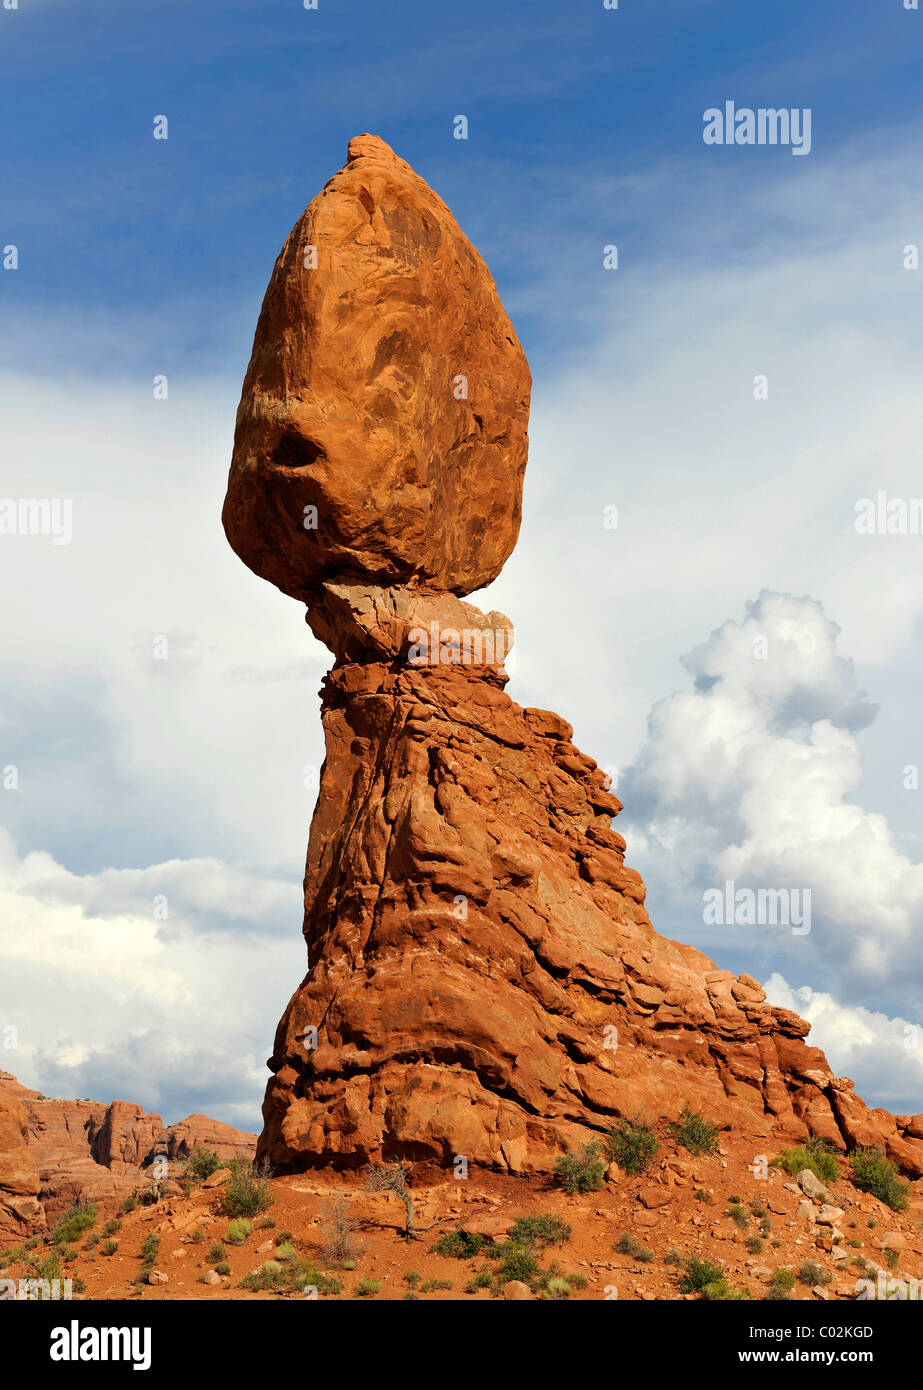 Balanced Rock, Rock Formation, Arches National Park, Moab, Utah, sud-ouest des États-Unis, États-Unis d'Amérique, USA Banque D'Images